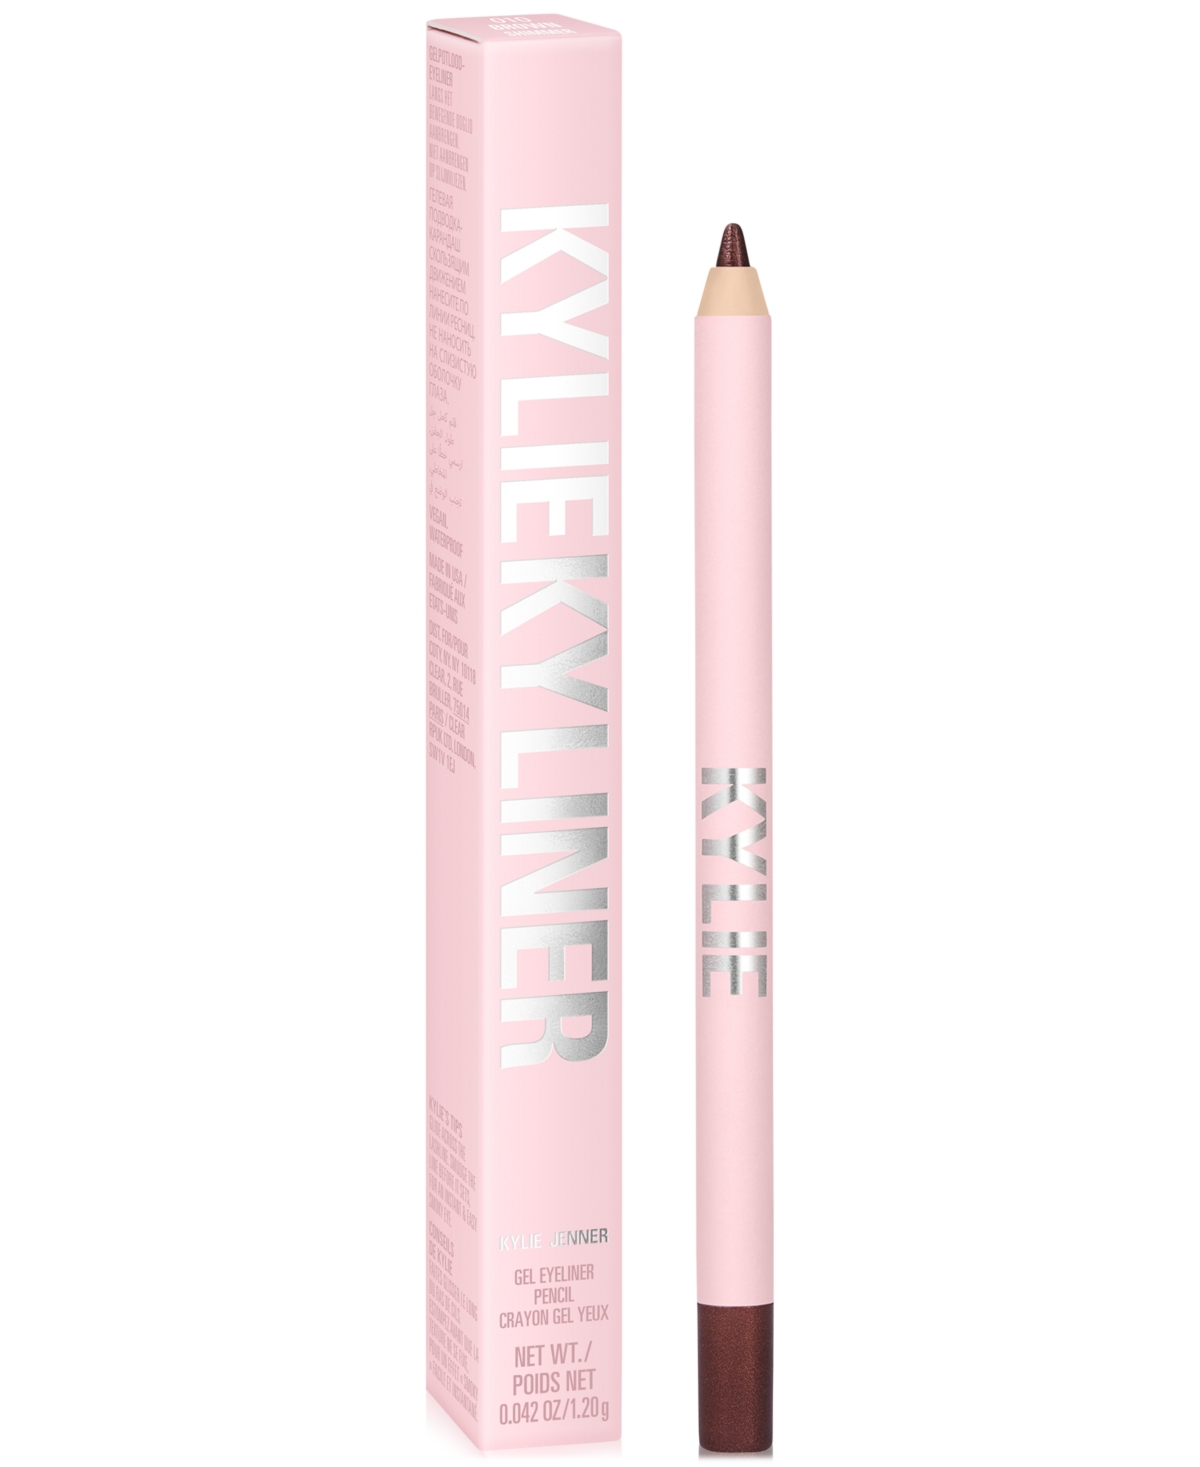 Kylie Cosmetics Kyliner Gel Eyeliner Pencil In Shimmery Brown